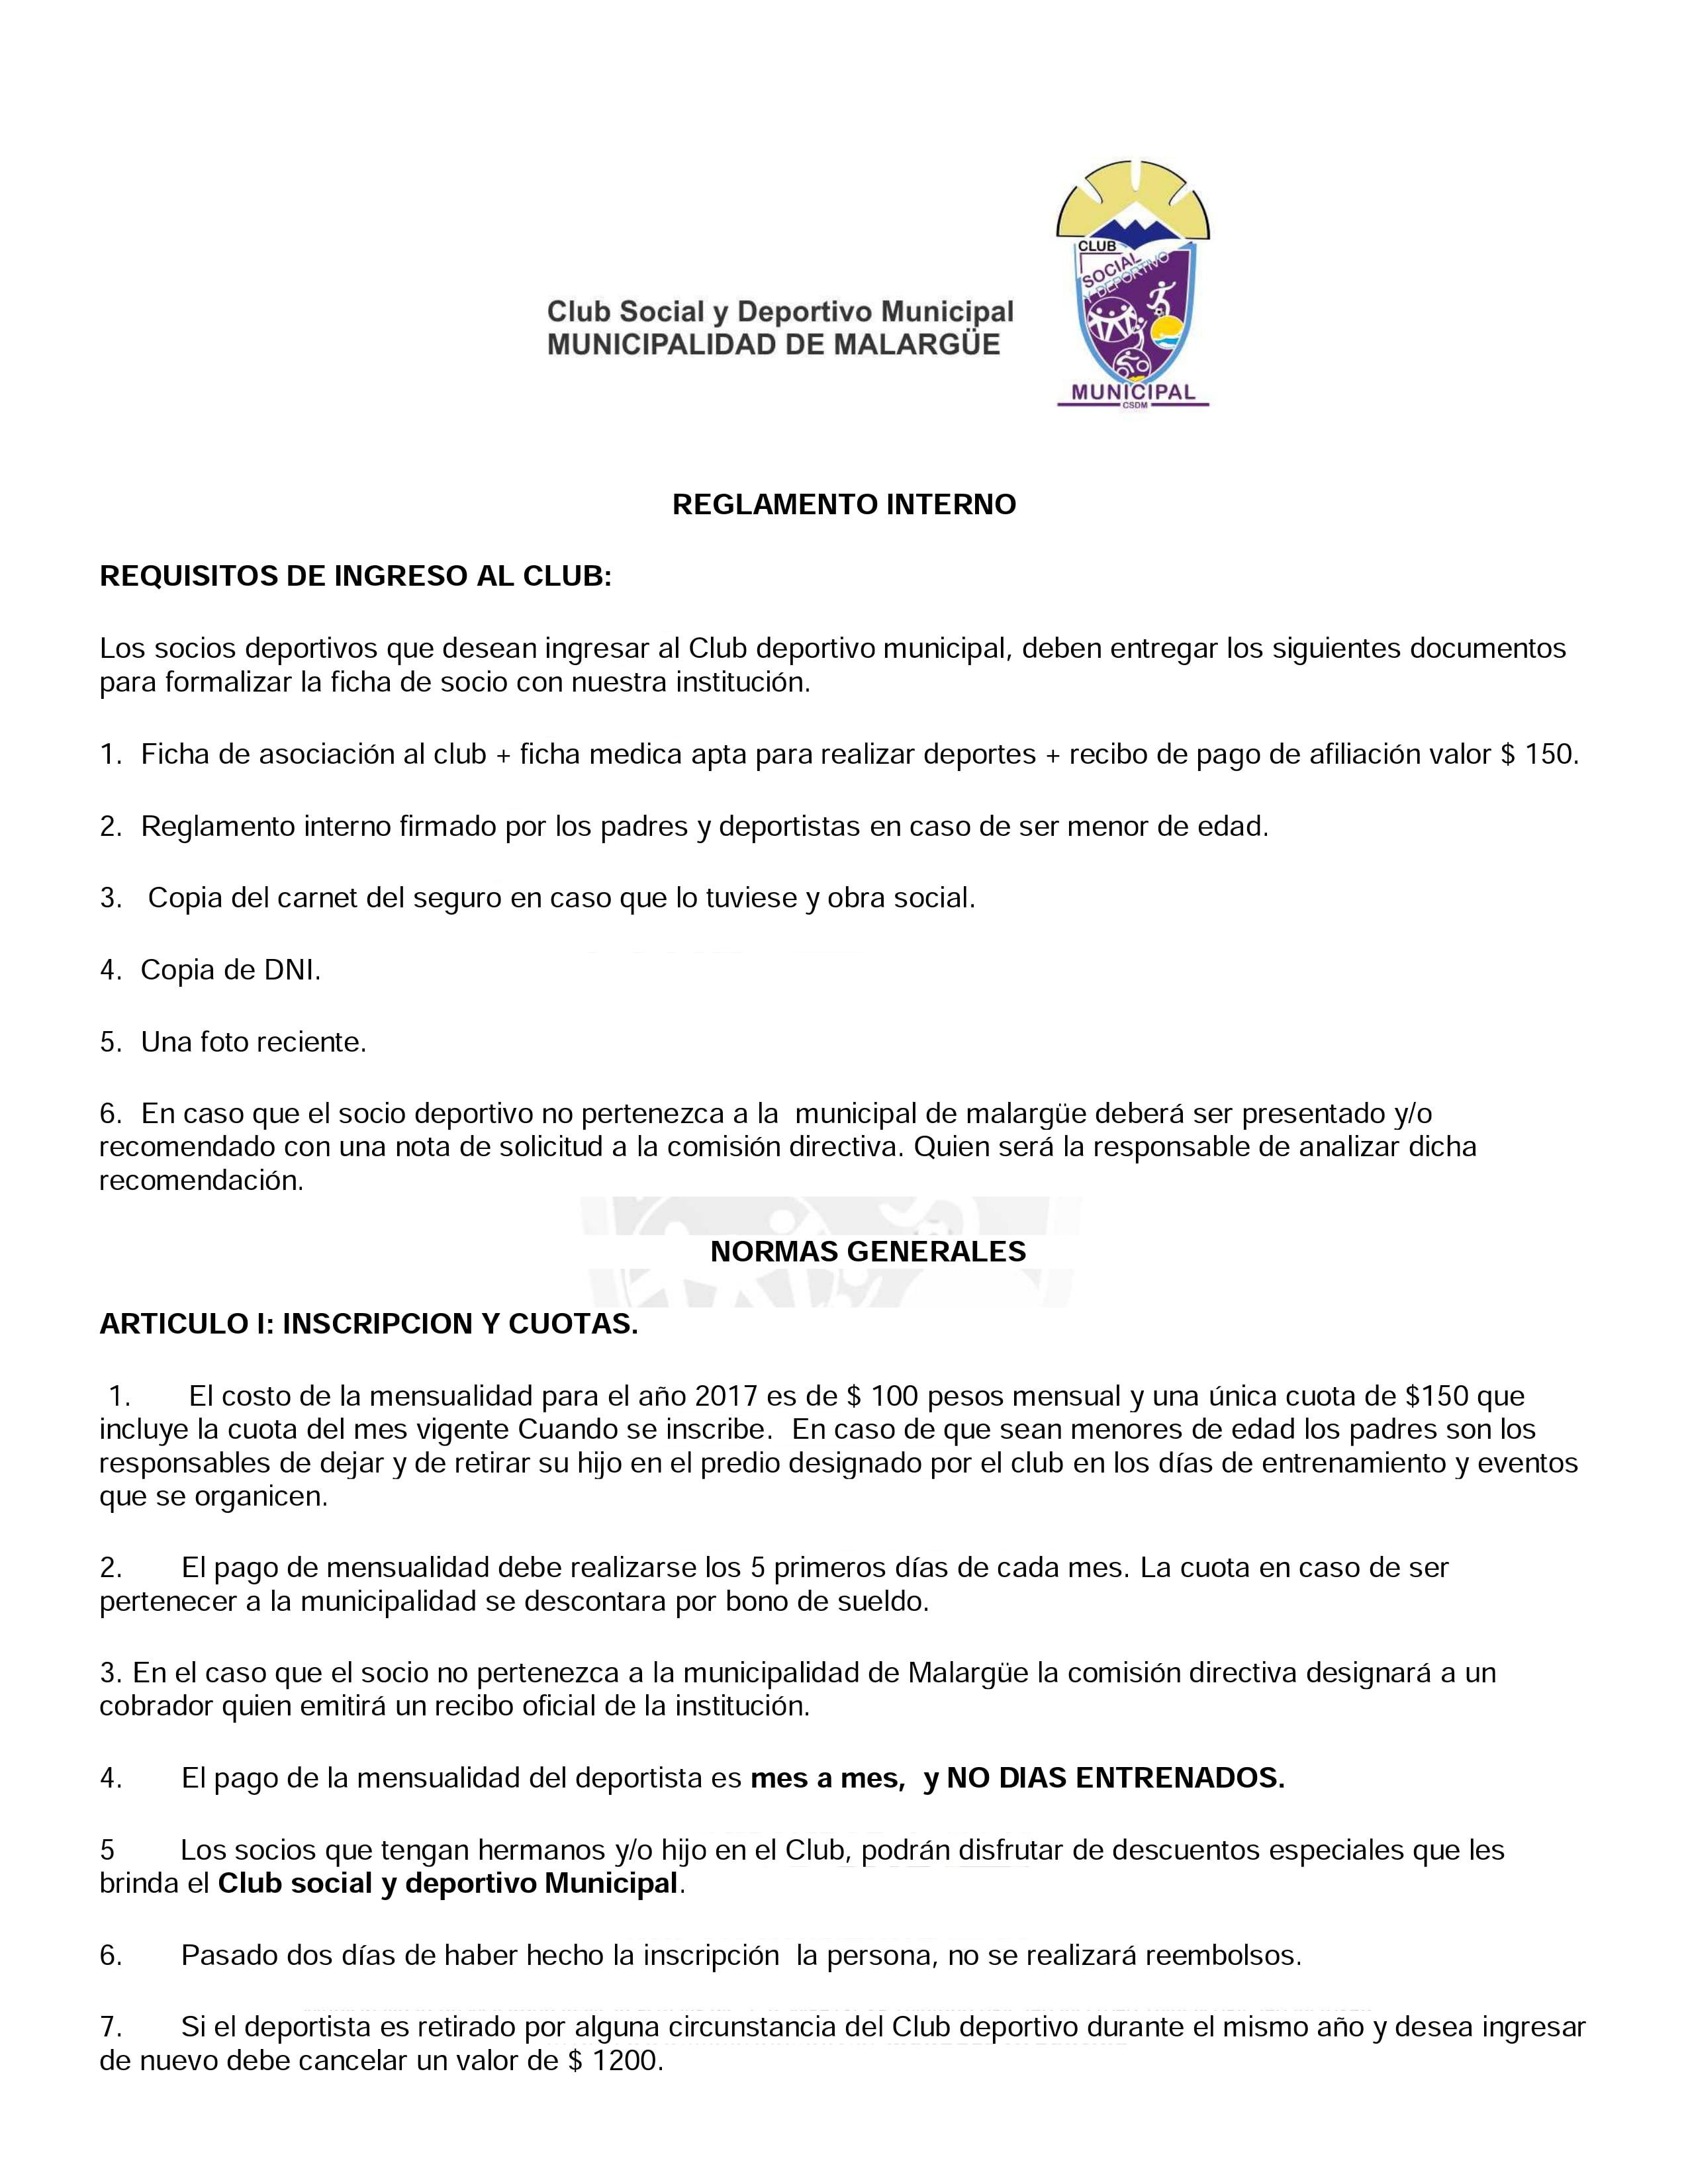 Reglamento del CSDM – Municipalidad de Malargüe